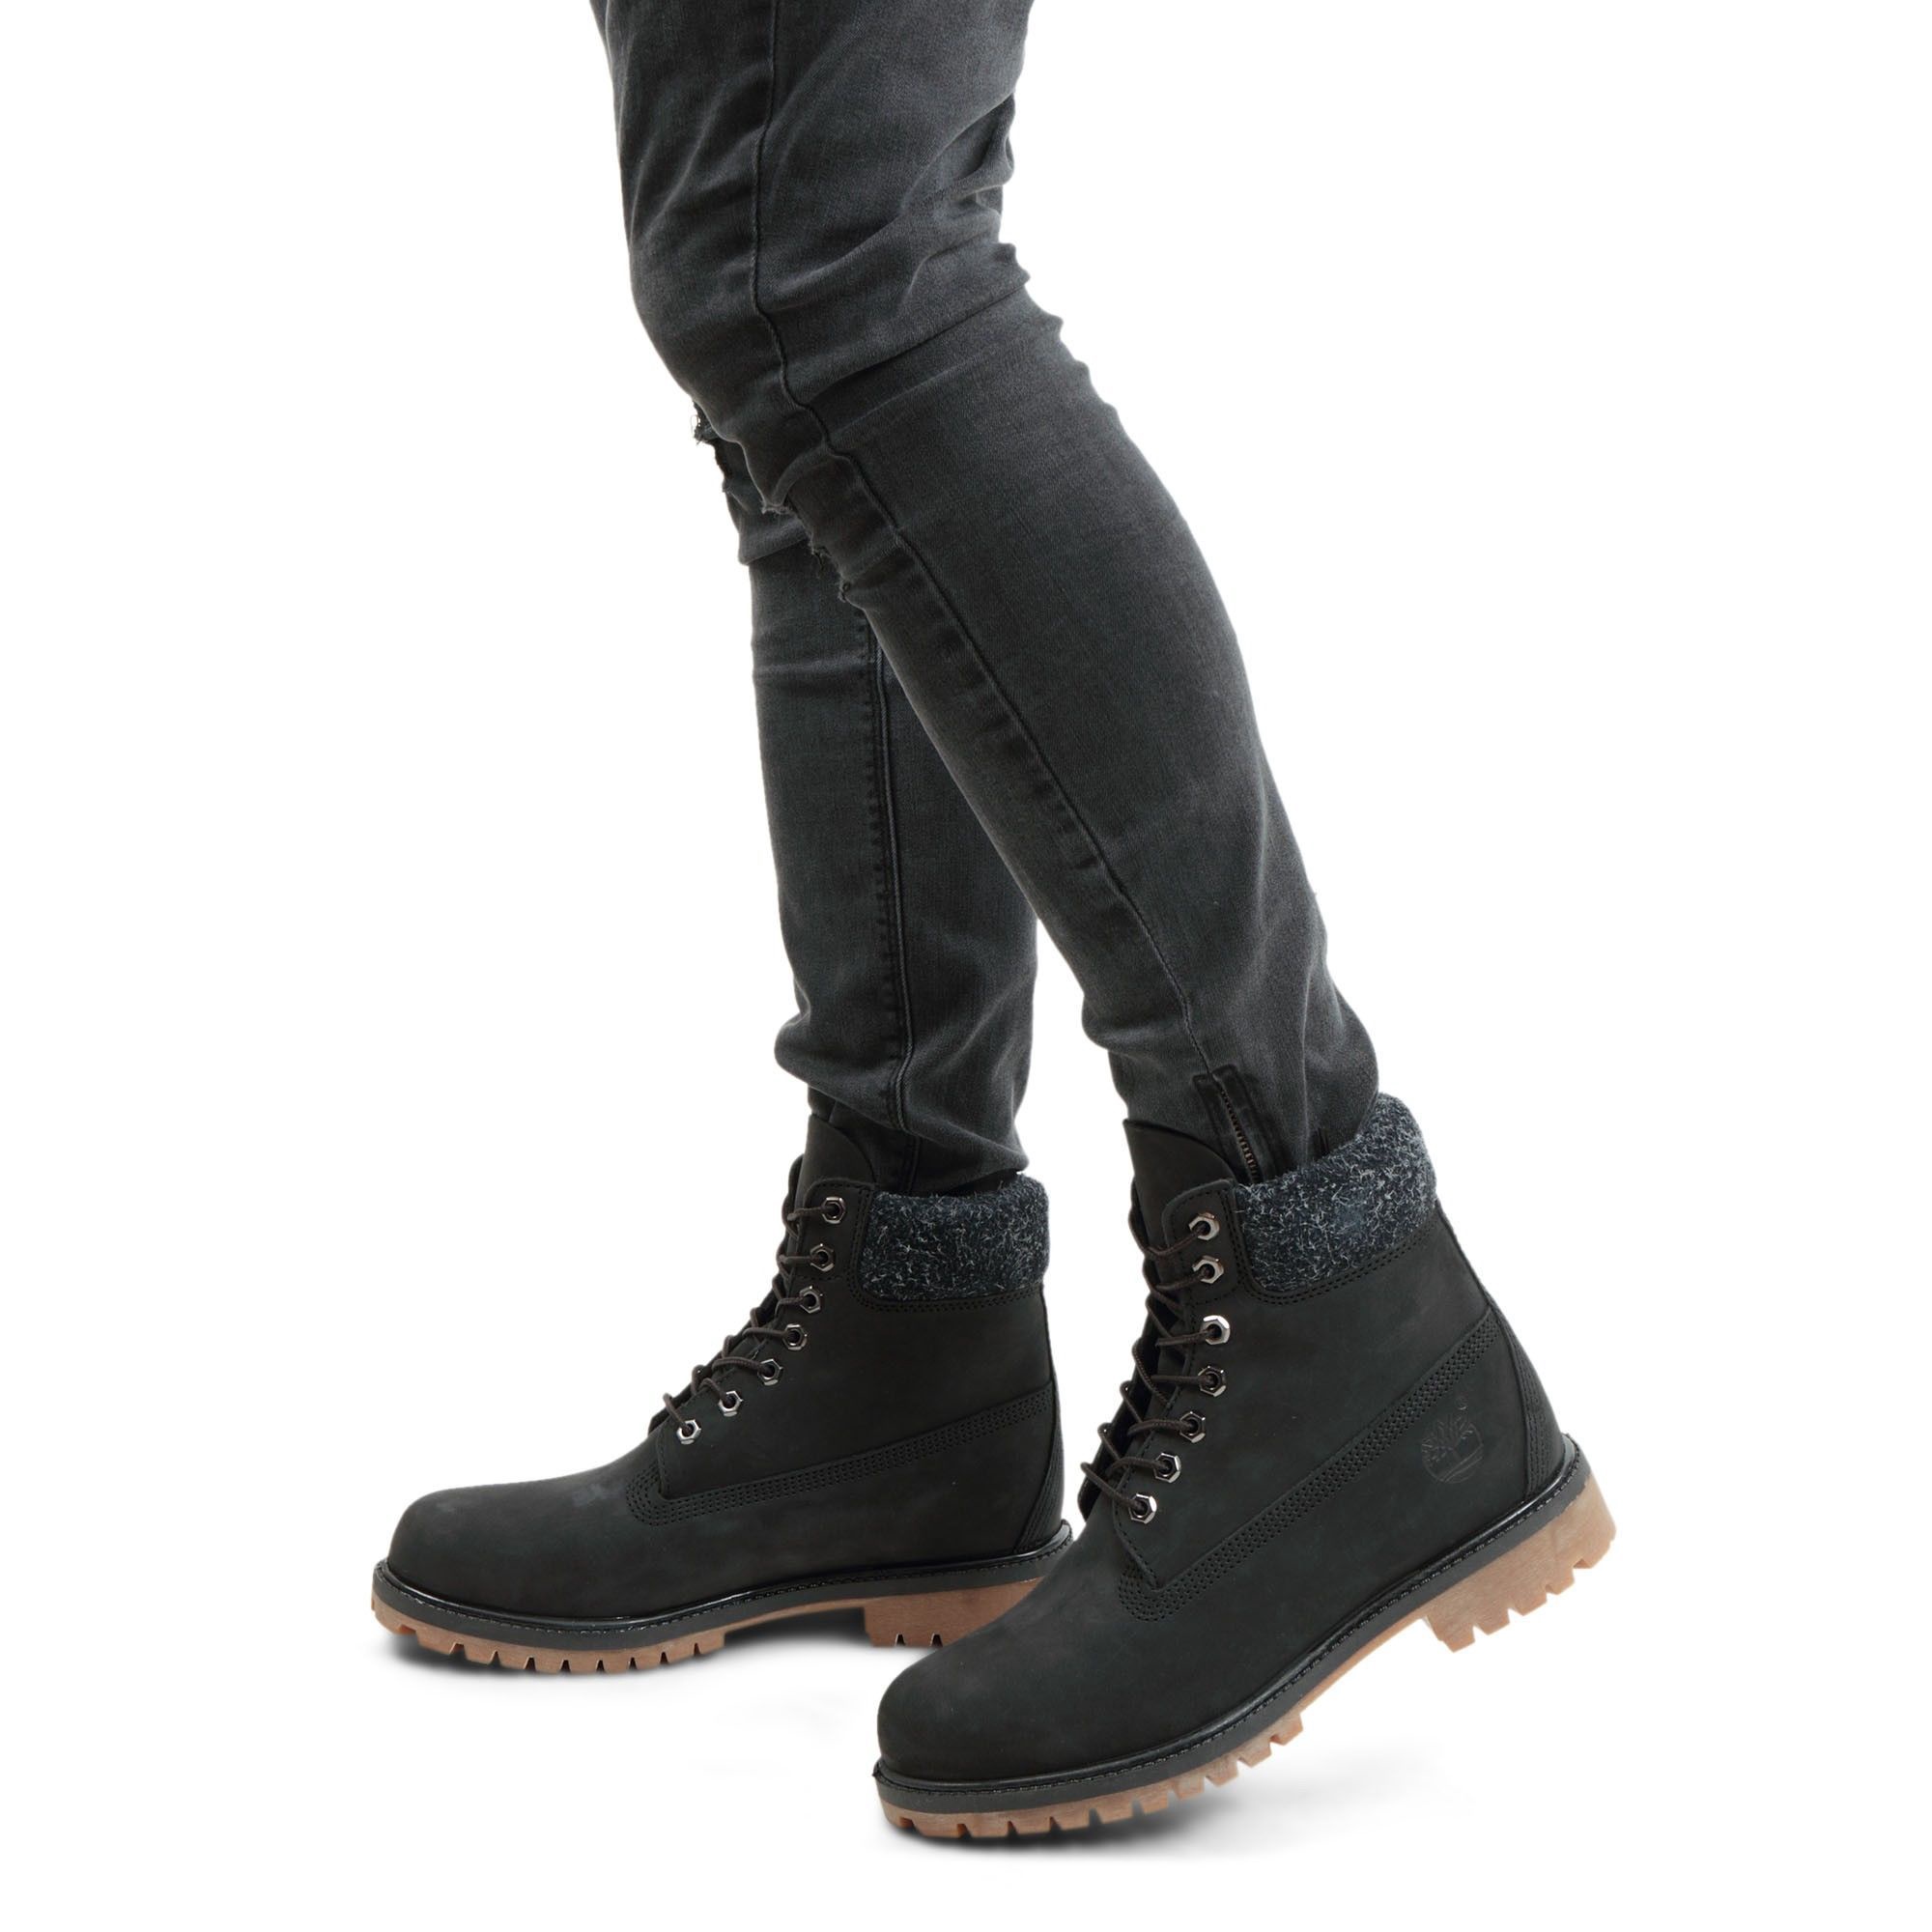 timberland 6 premium boot black